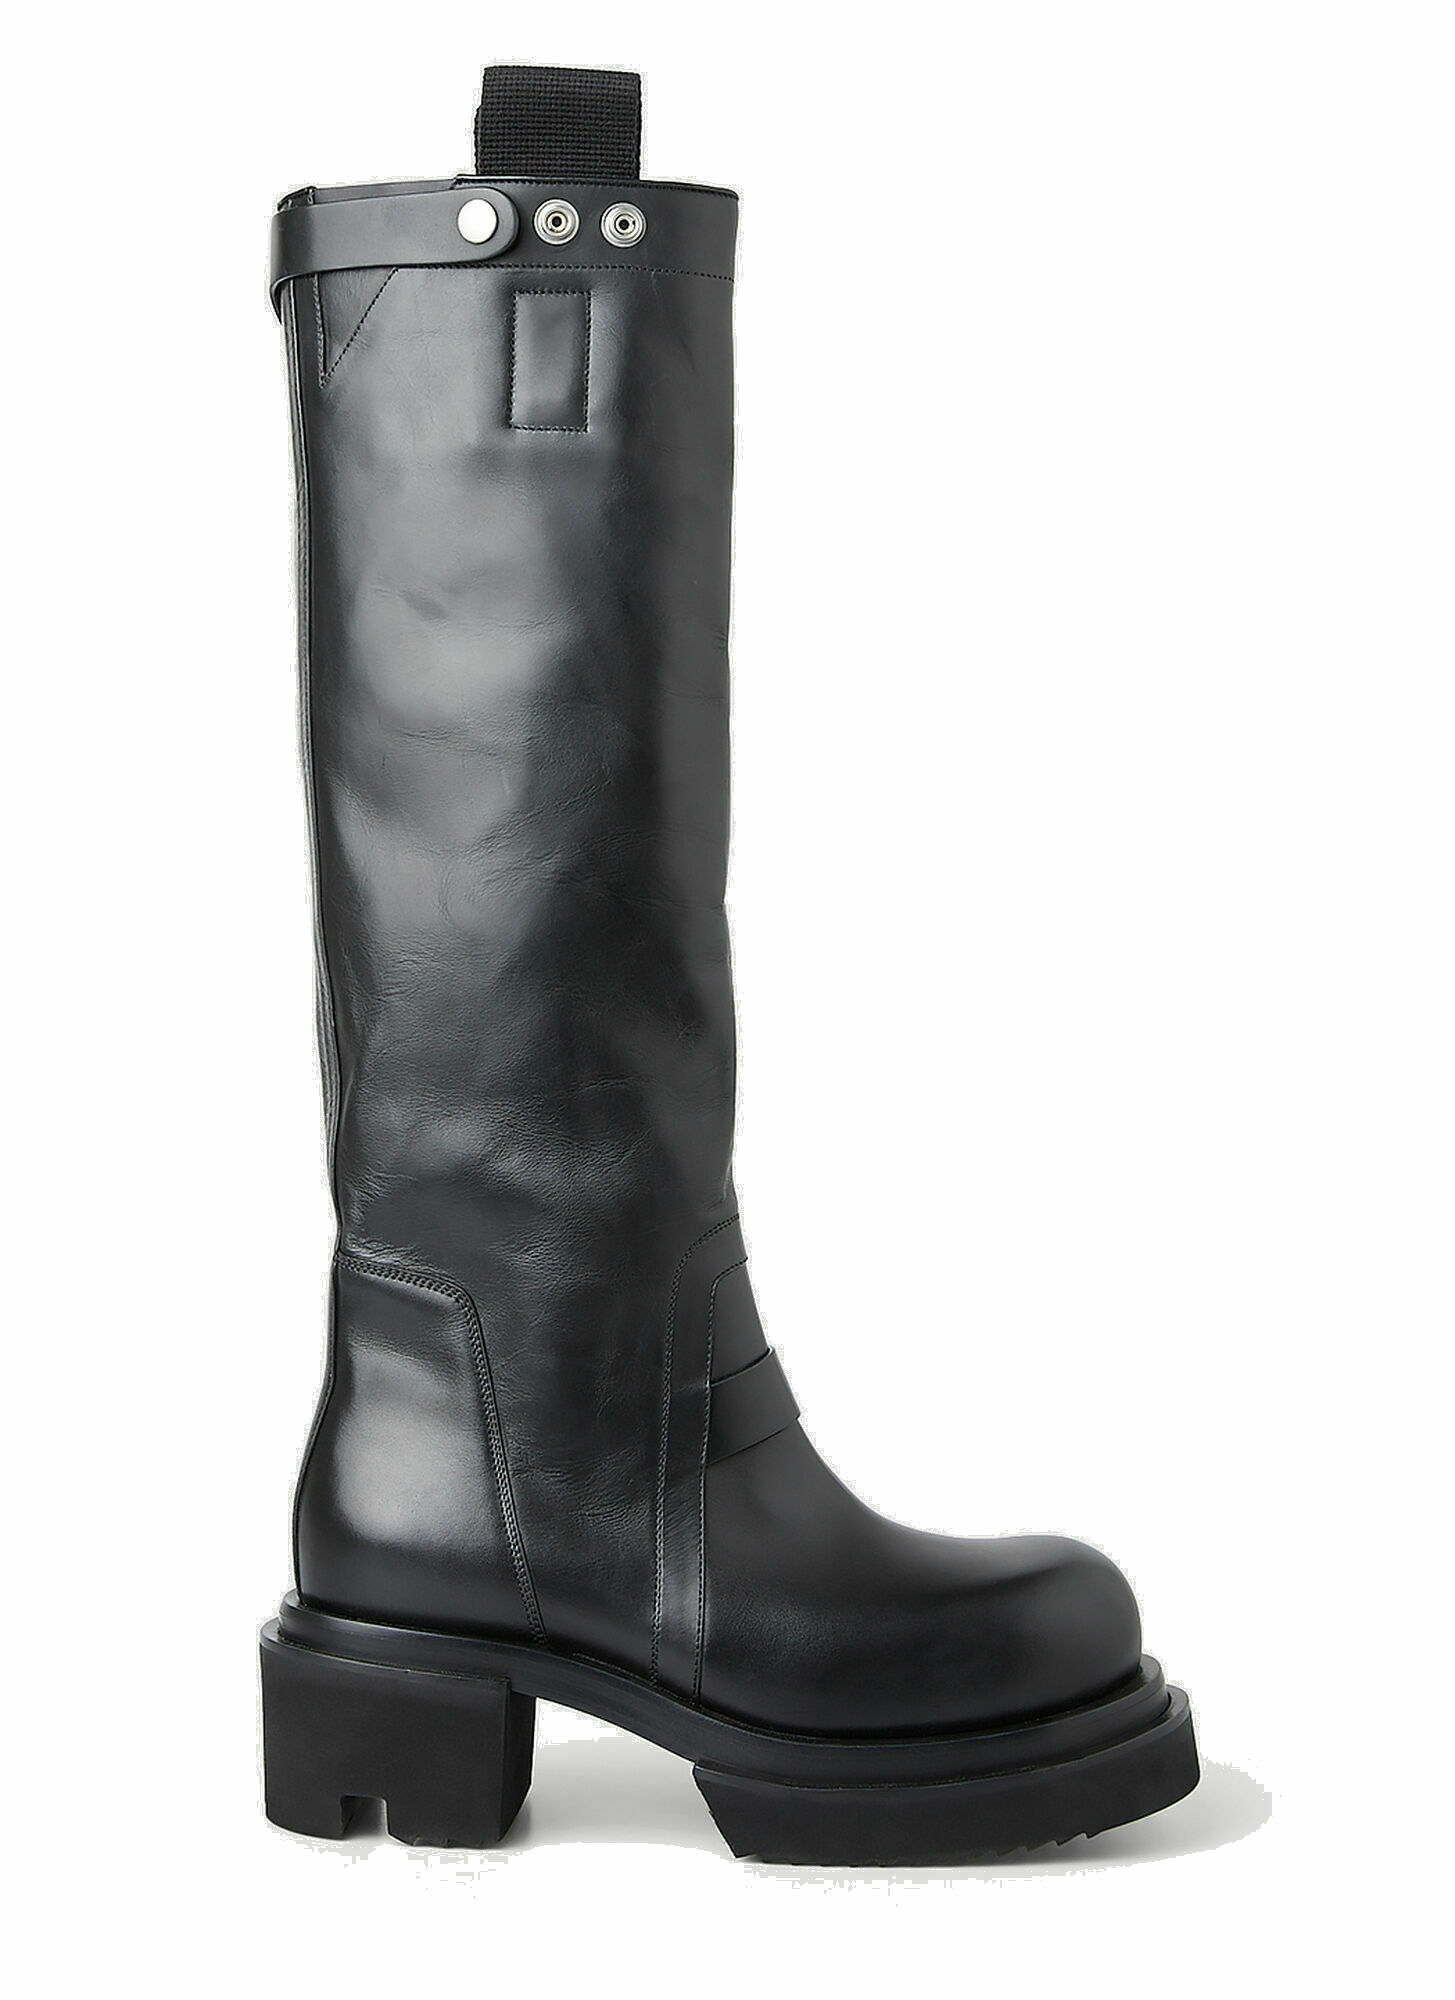 Photo: Bogun Knee High Boots in Black